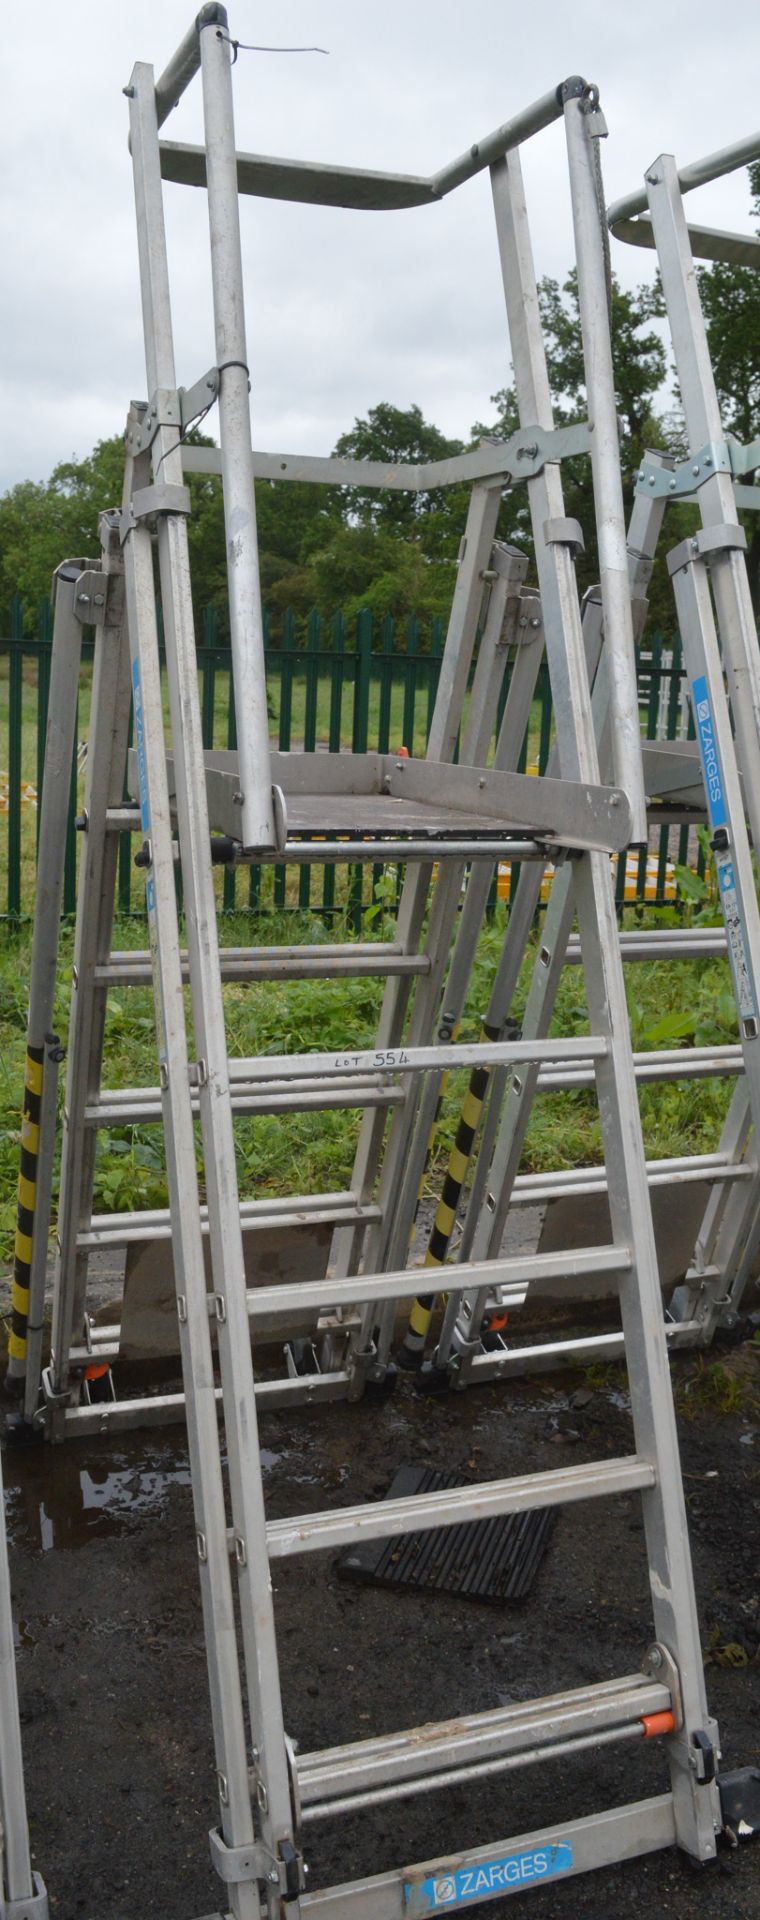 Zarges aluminium podium ladder A777932 - Image 2 of 2